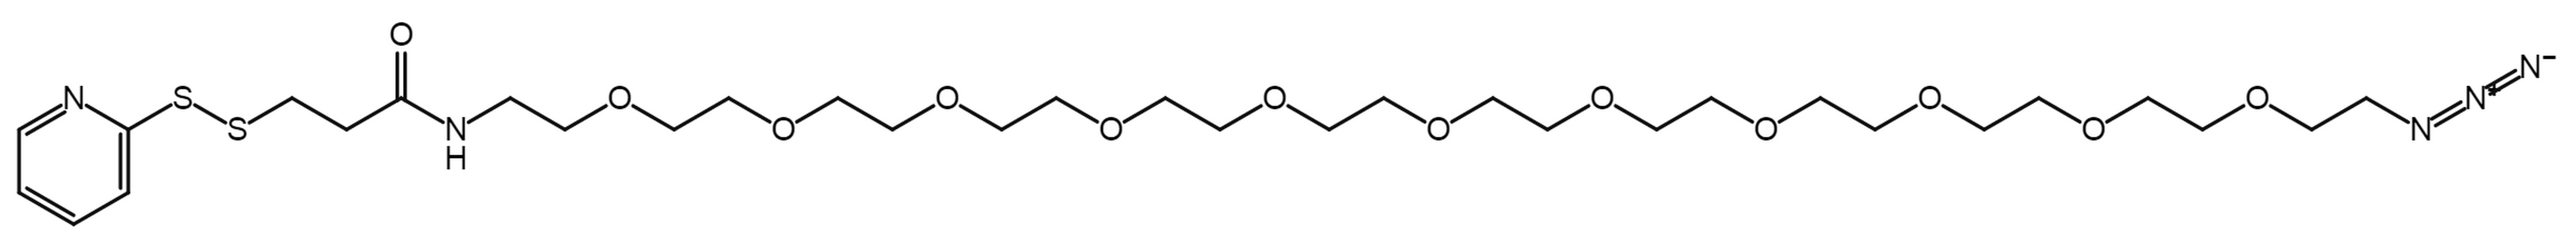 SPDP-PEG11-azide